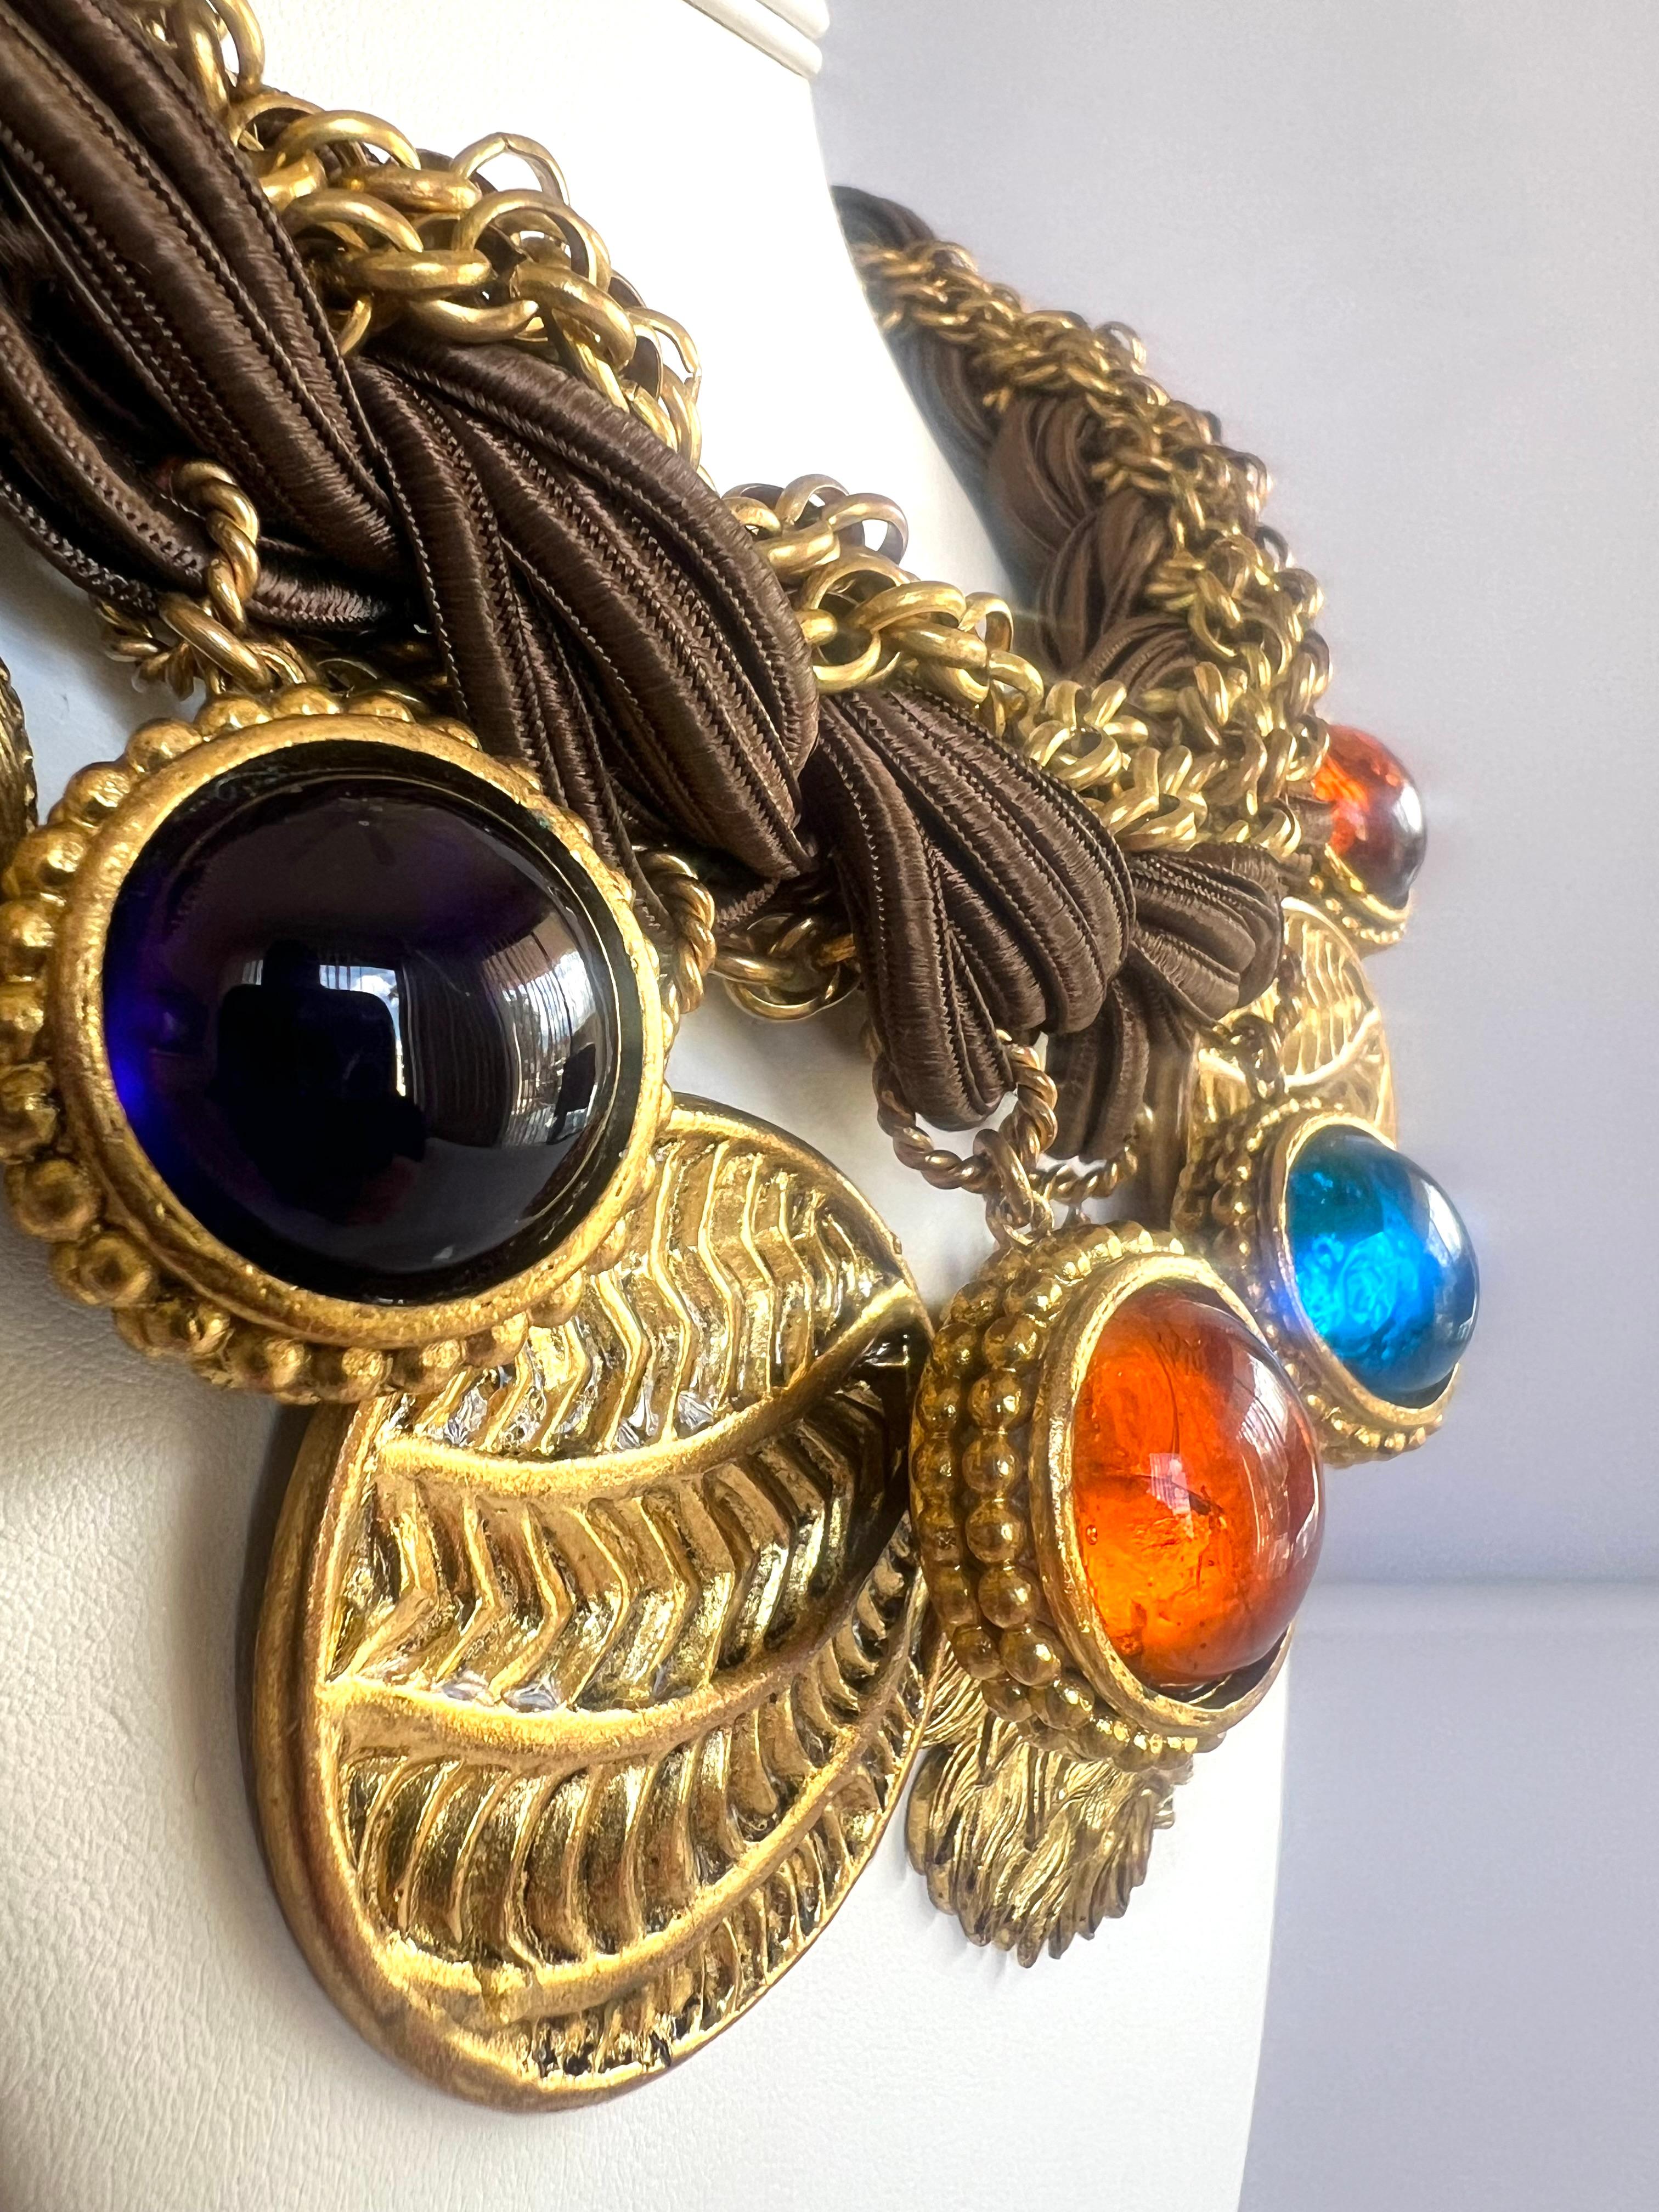 Vintage verziert  Isabel Canovas Halskette aus Seide und Kette mit Charme. Die Halskette ist mit vergoldetem Metall und gegossenen Glasanhängern verziert, die sehr kunstvoll sind. Unterzeichnet von Isabel Canovas. 